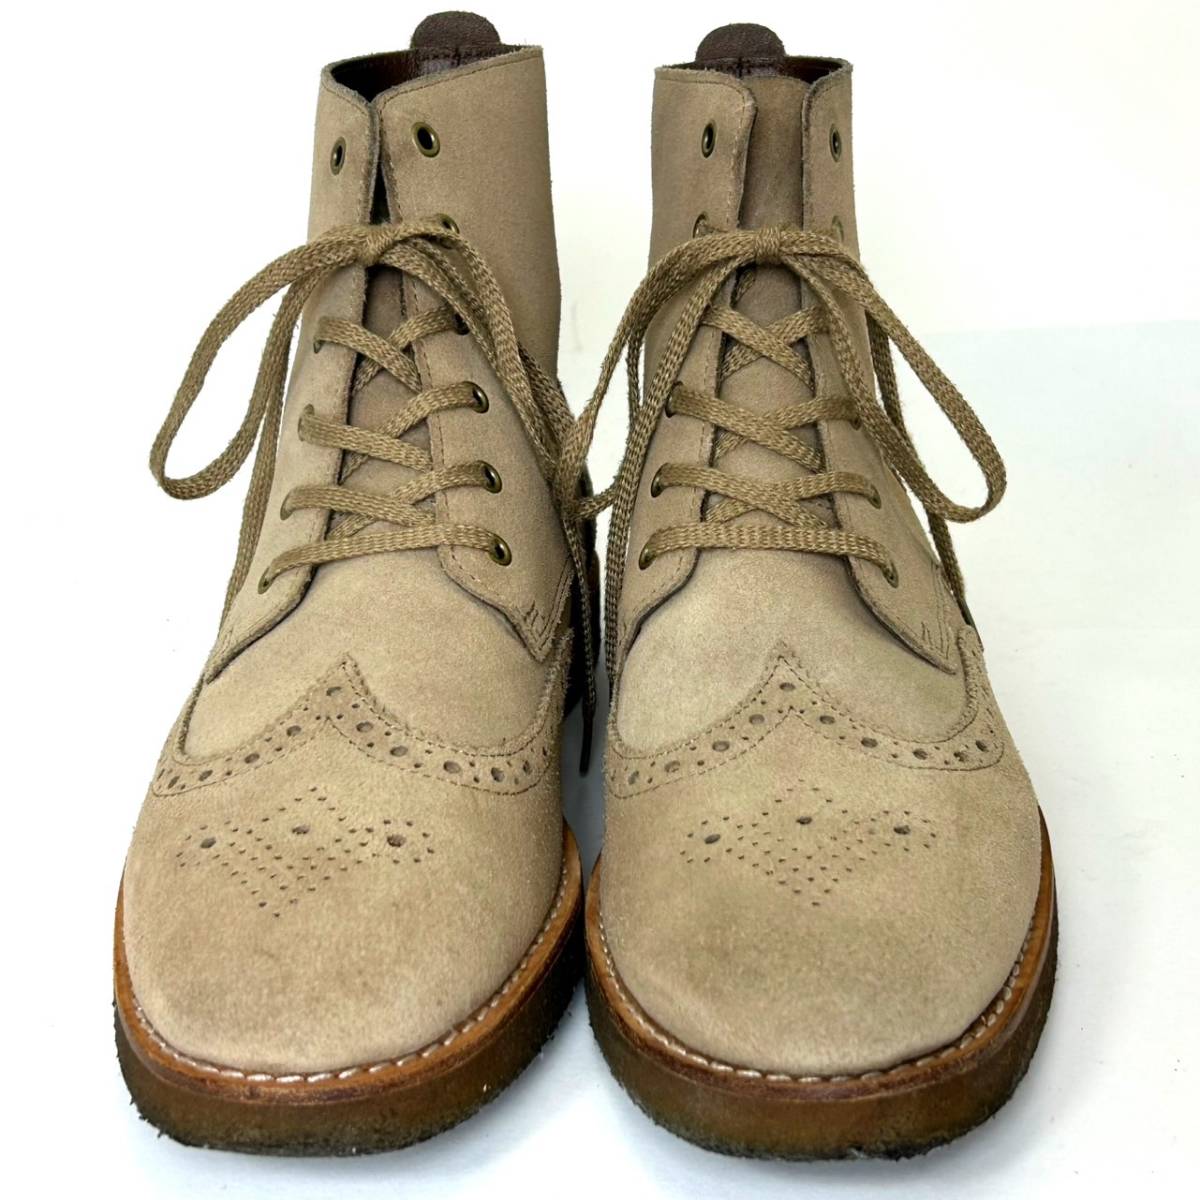 即決 Clarks クラークス メンズ UK8.5G 26.5cm程度 スエード 本革 レザー ウイングチップ ブーツ ベージュ カジュアルシューズ 革靴 中古の画像4